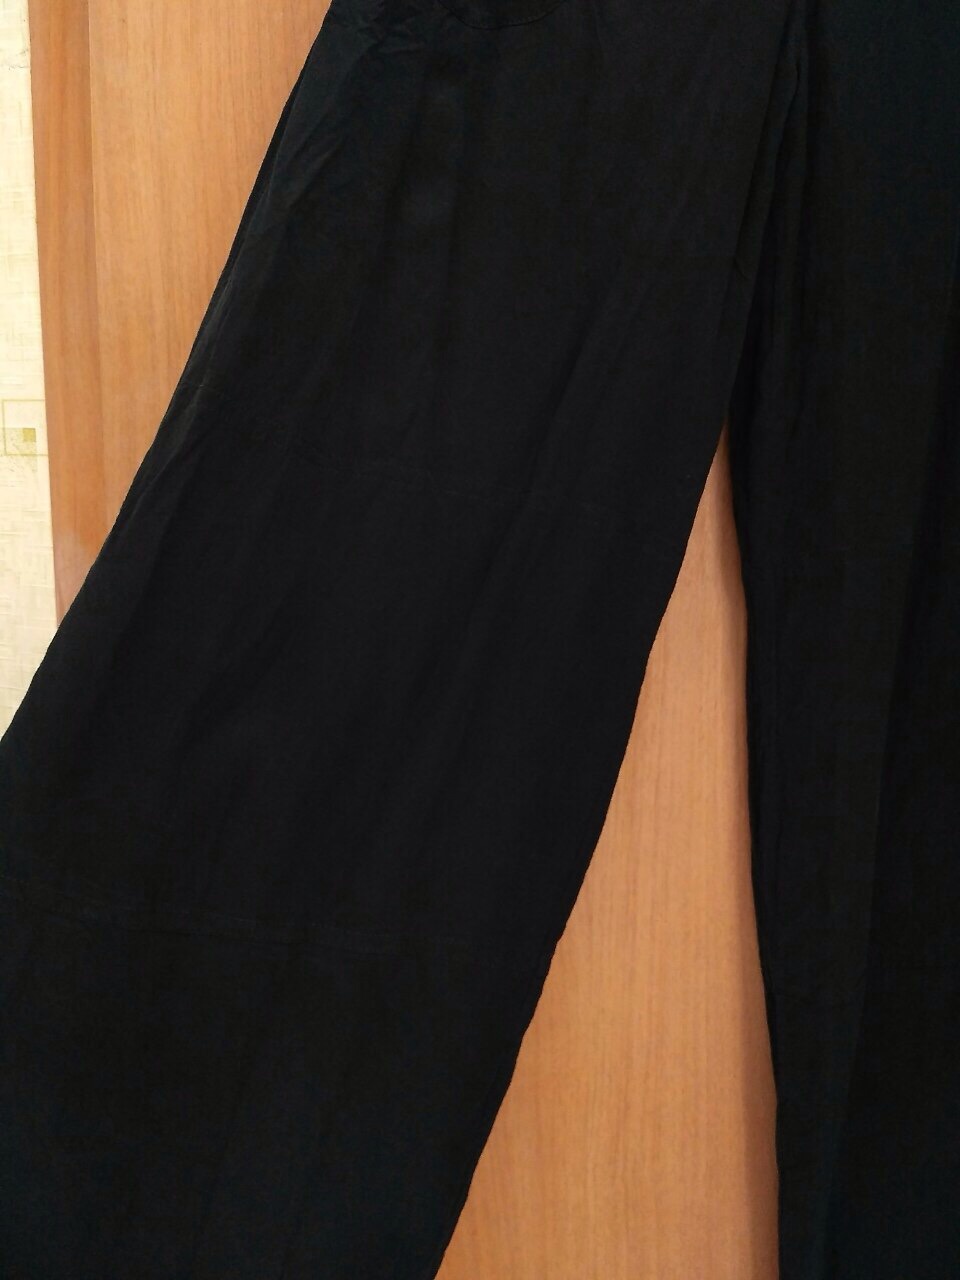 Шёлковые чёрные брюки от Sonia Rykiel, р-р 42-44